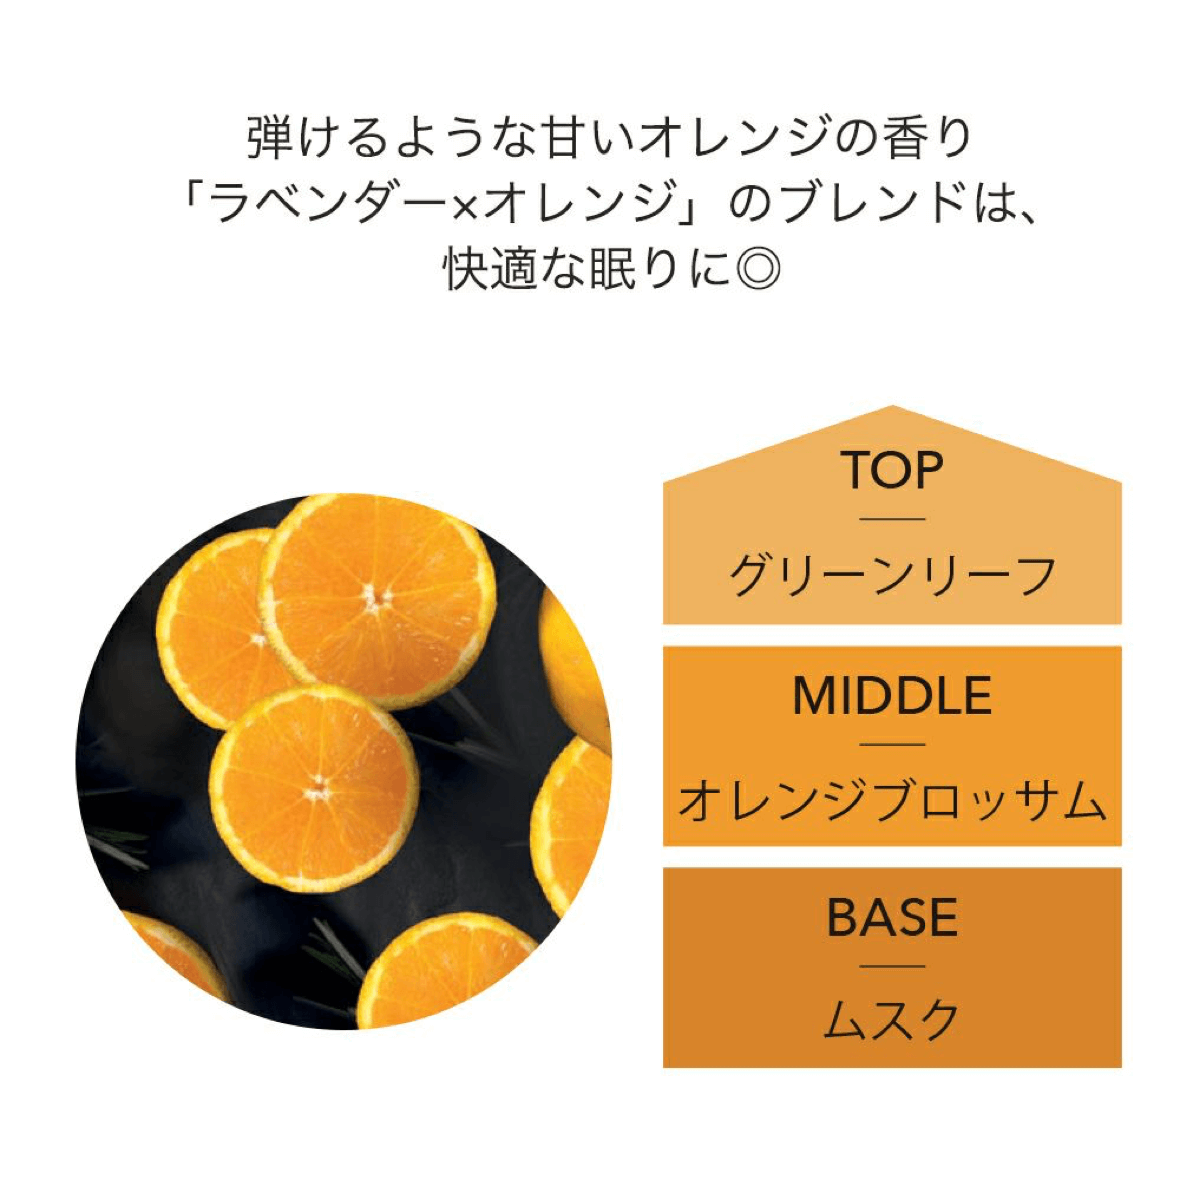 fragrance oil スウィート オレンジ